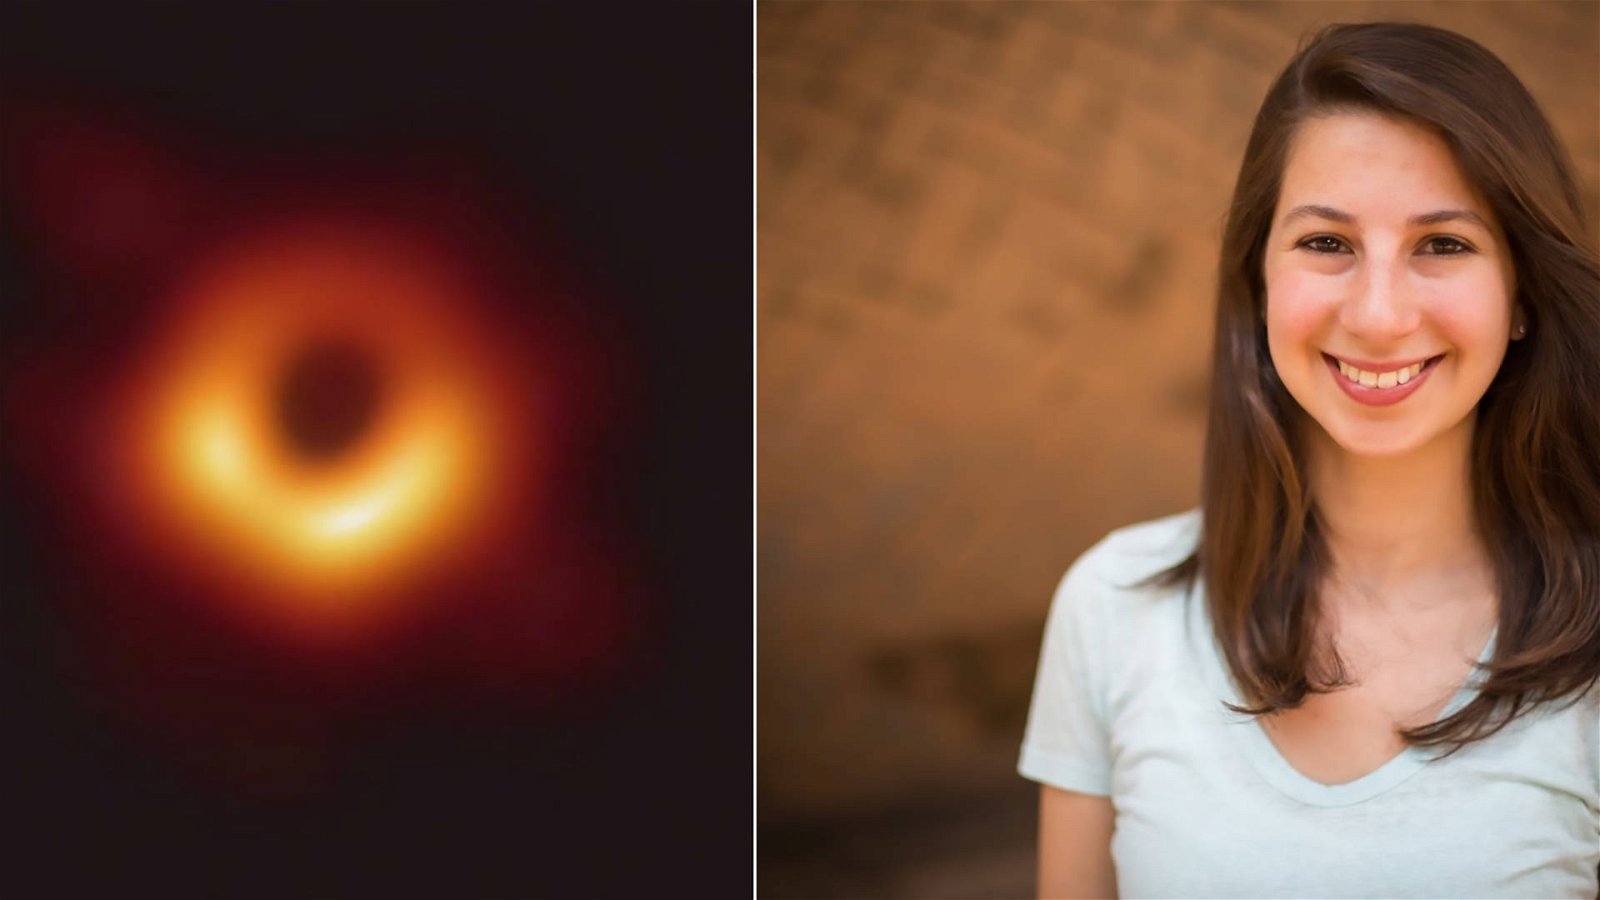 Immagine di Katie Bouman, la donna dietro l'immagine del black hole